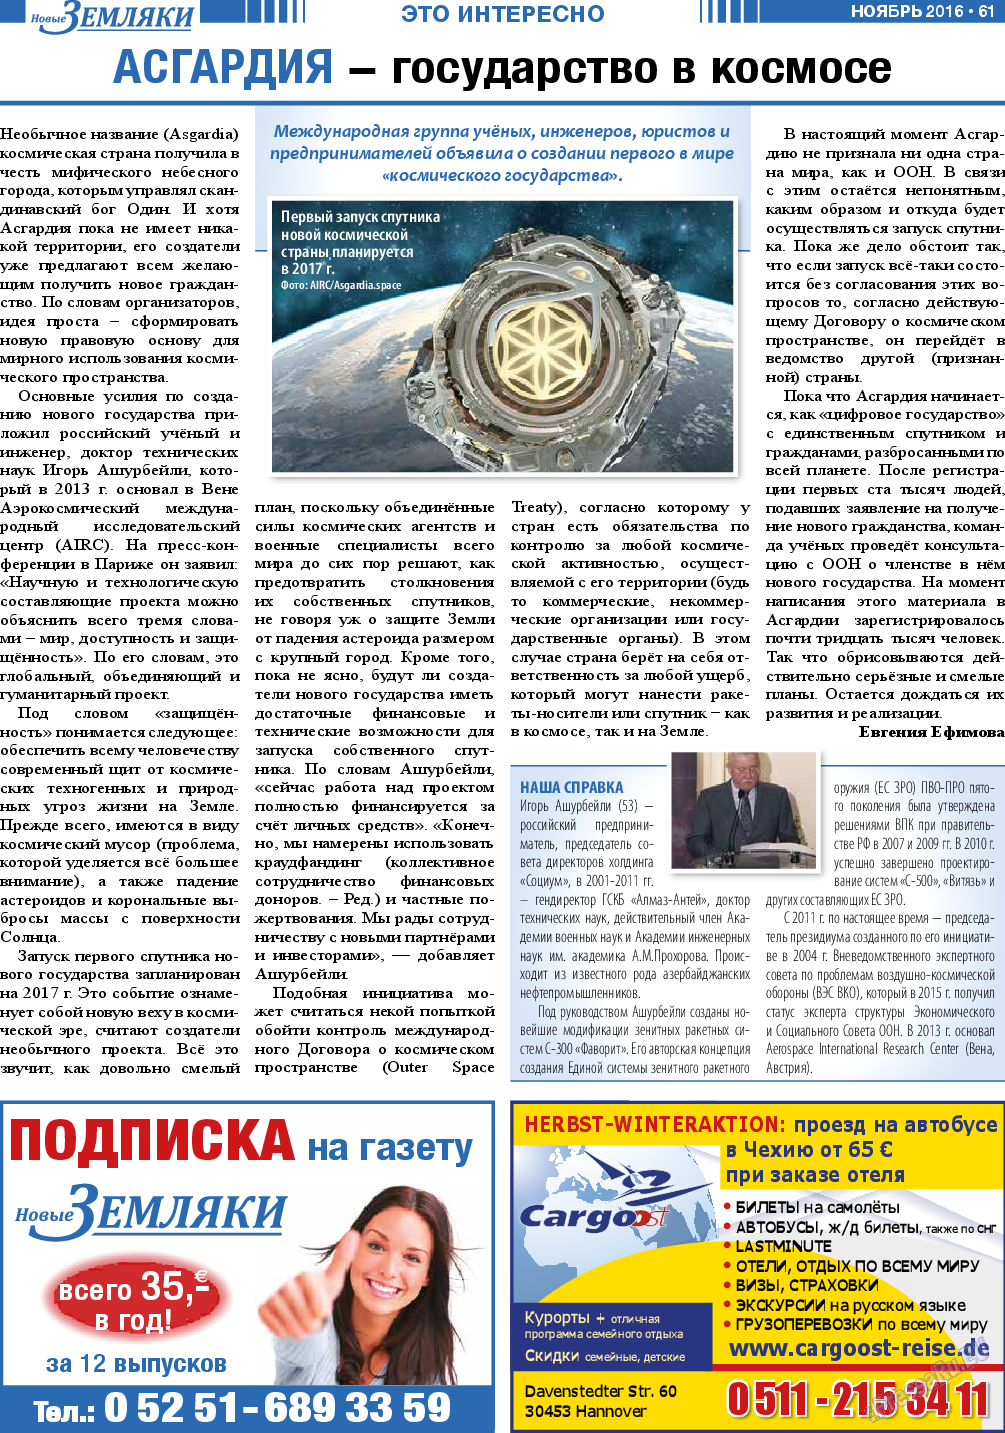 Новые Земляки, газета. 2016 №11 стр.61